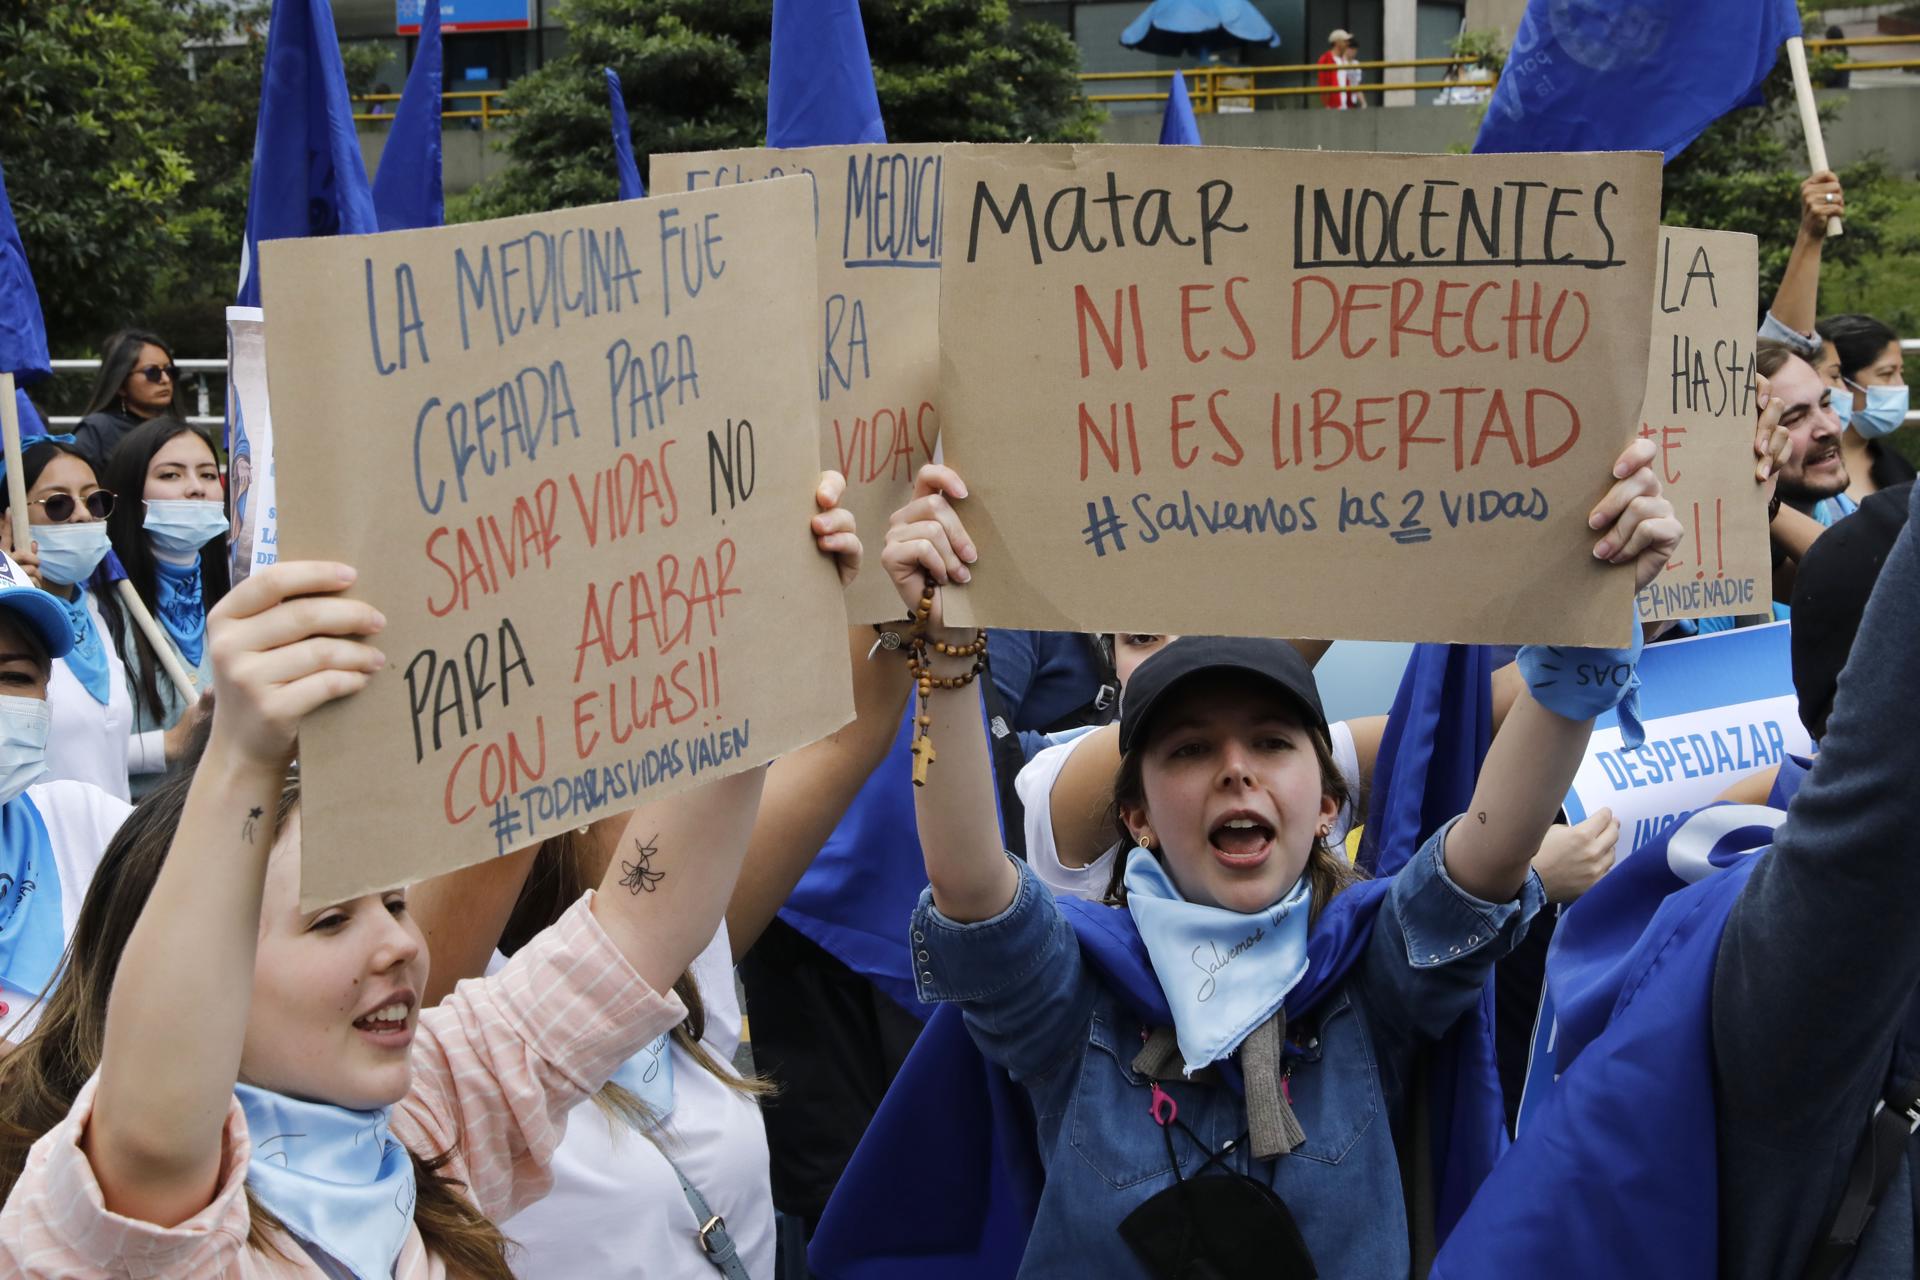 Un referendo contra el aborto se abre camino en Colombia, aunque advierten irregularidades